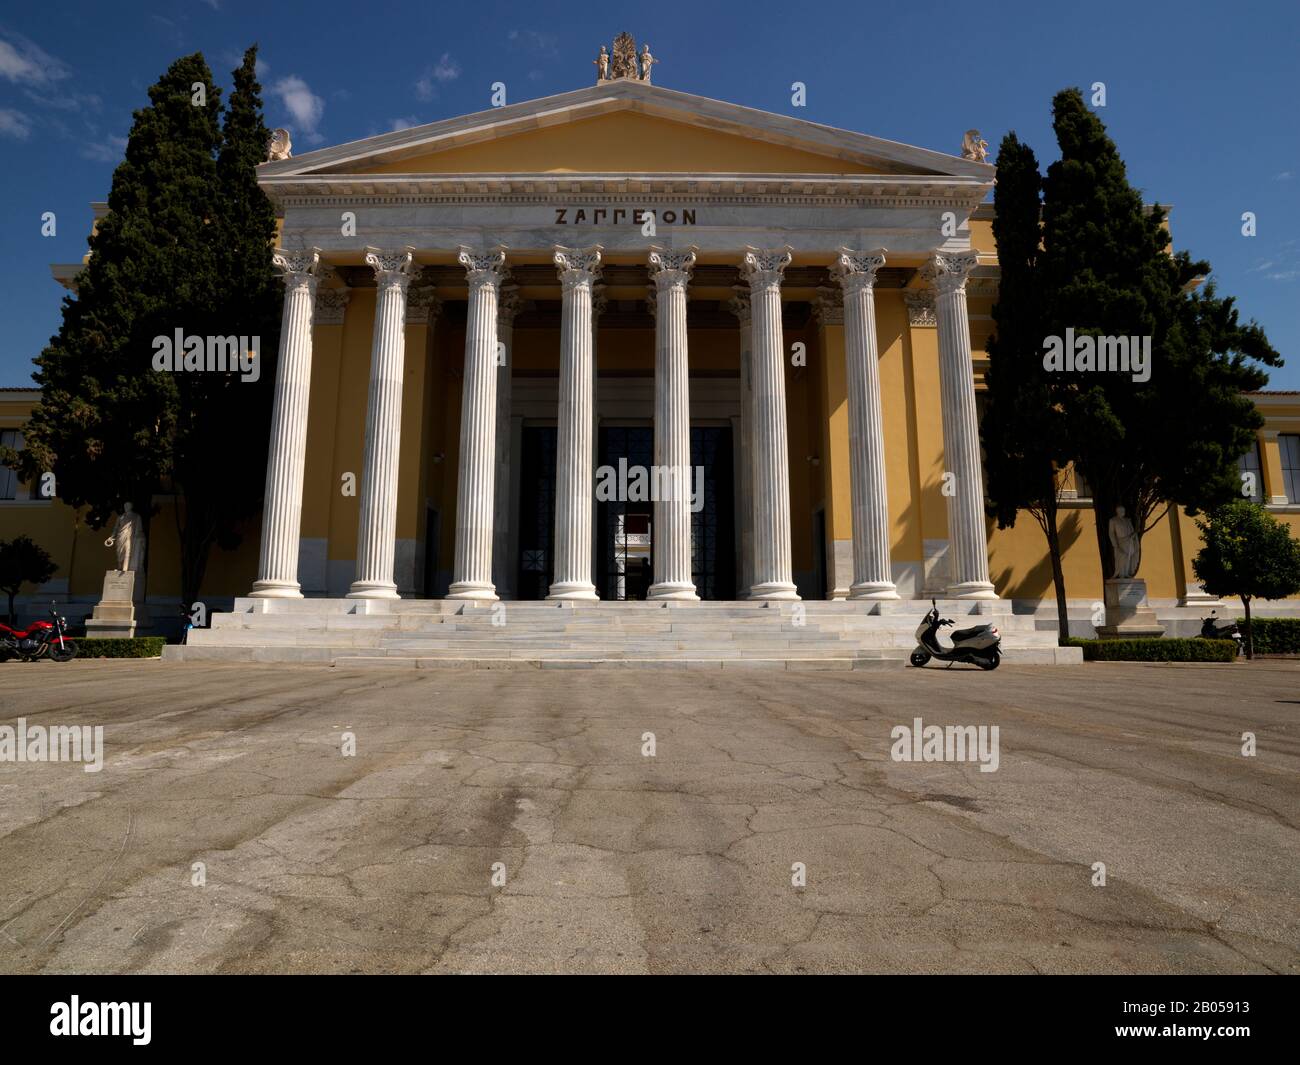 Facade of an exhibition hall, Zappeion, National Garden of Athens, Athens, Attica, Greece Stock Photo